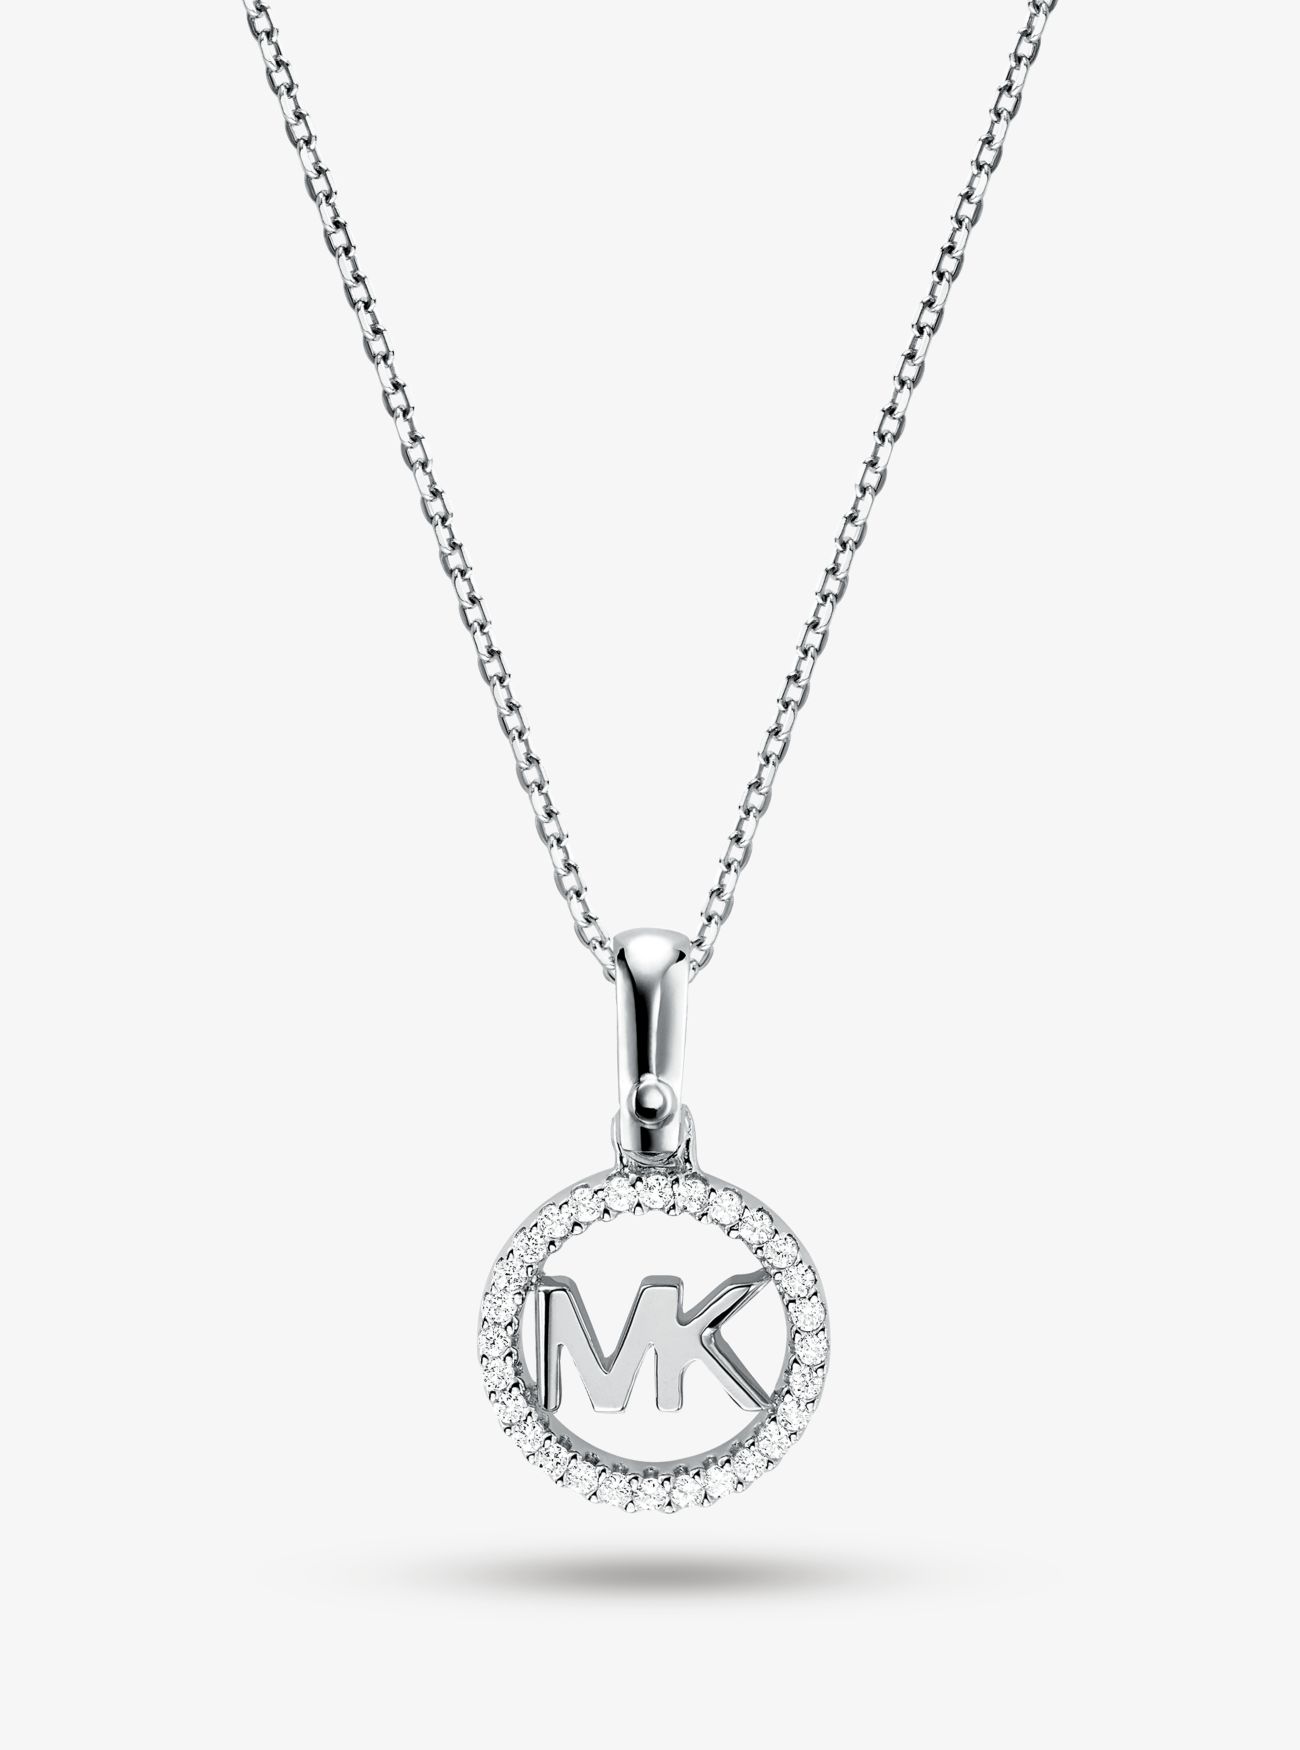 MKCollar con chapado en metales preciosos adorno de logotipo e incrustaciones - Plateado(Plateado) - Michael Kors